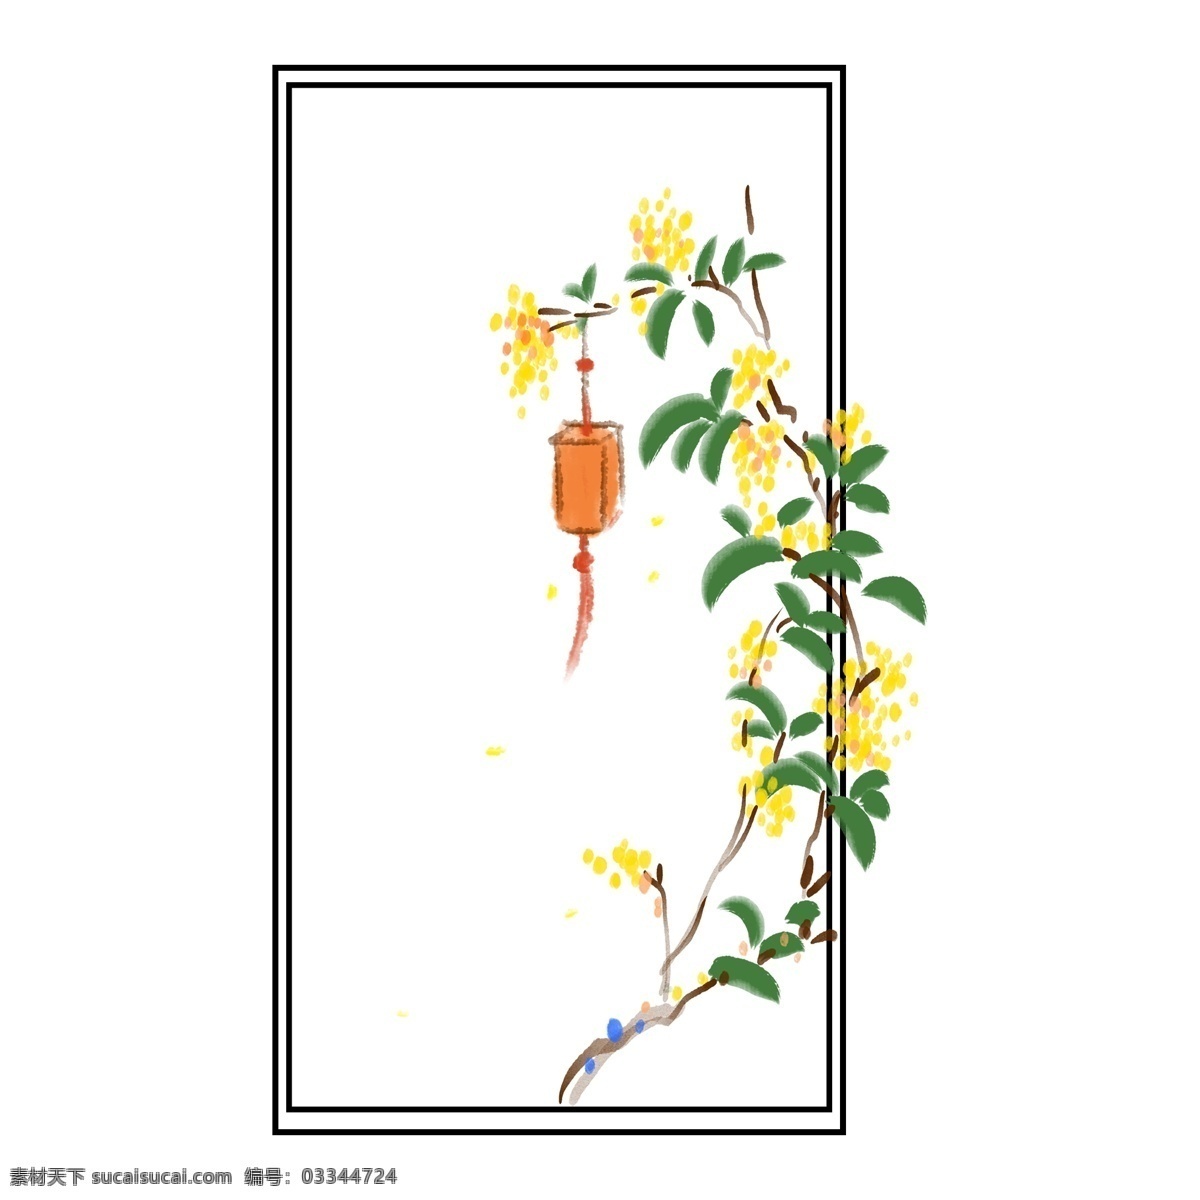 挂 灯彩 古风 卡通 边框 花草 植物 鲜花 花卉 框架 矩形 长方形 黑色直线 草本 有机 黄色花朵 挂灯笼 中式